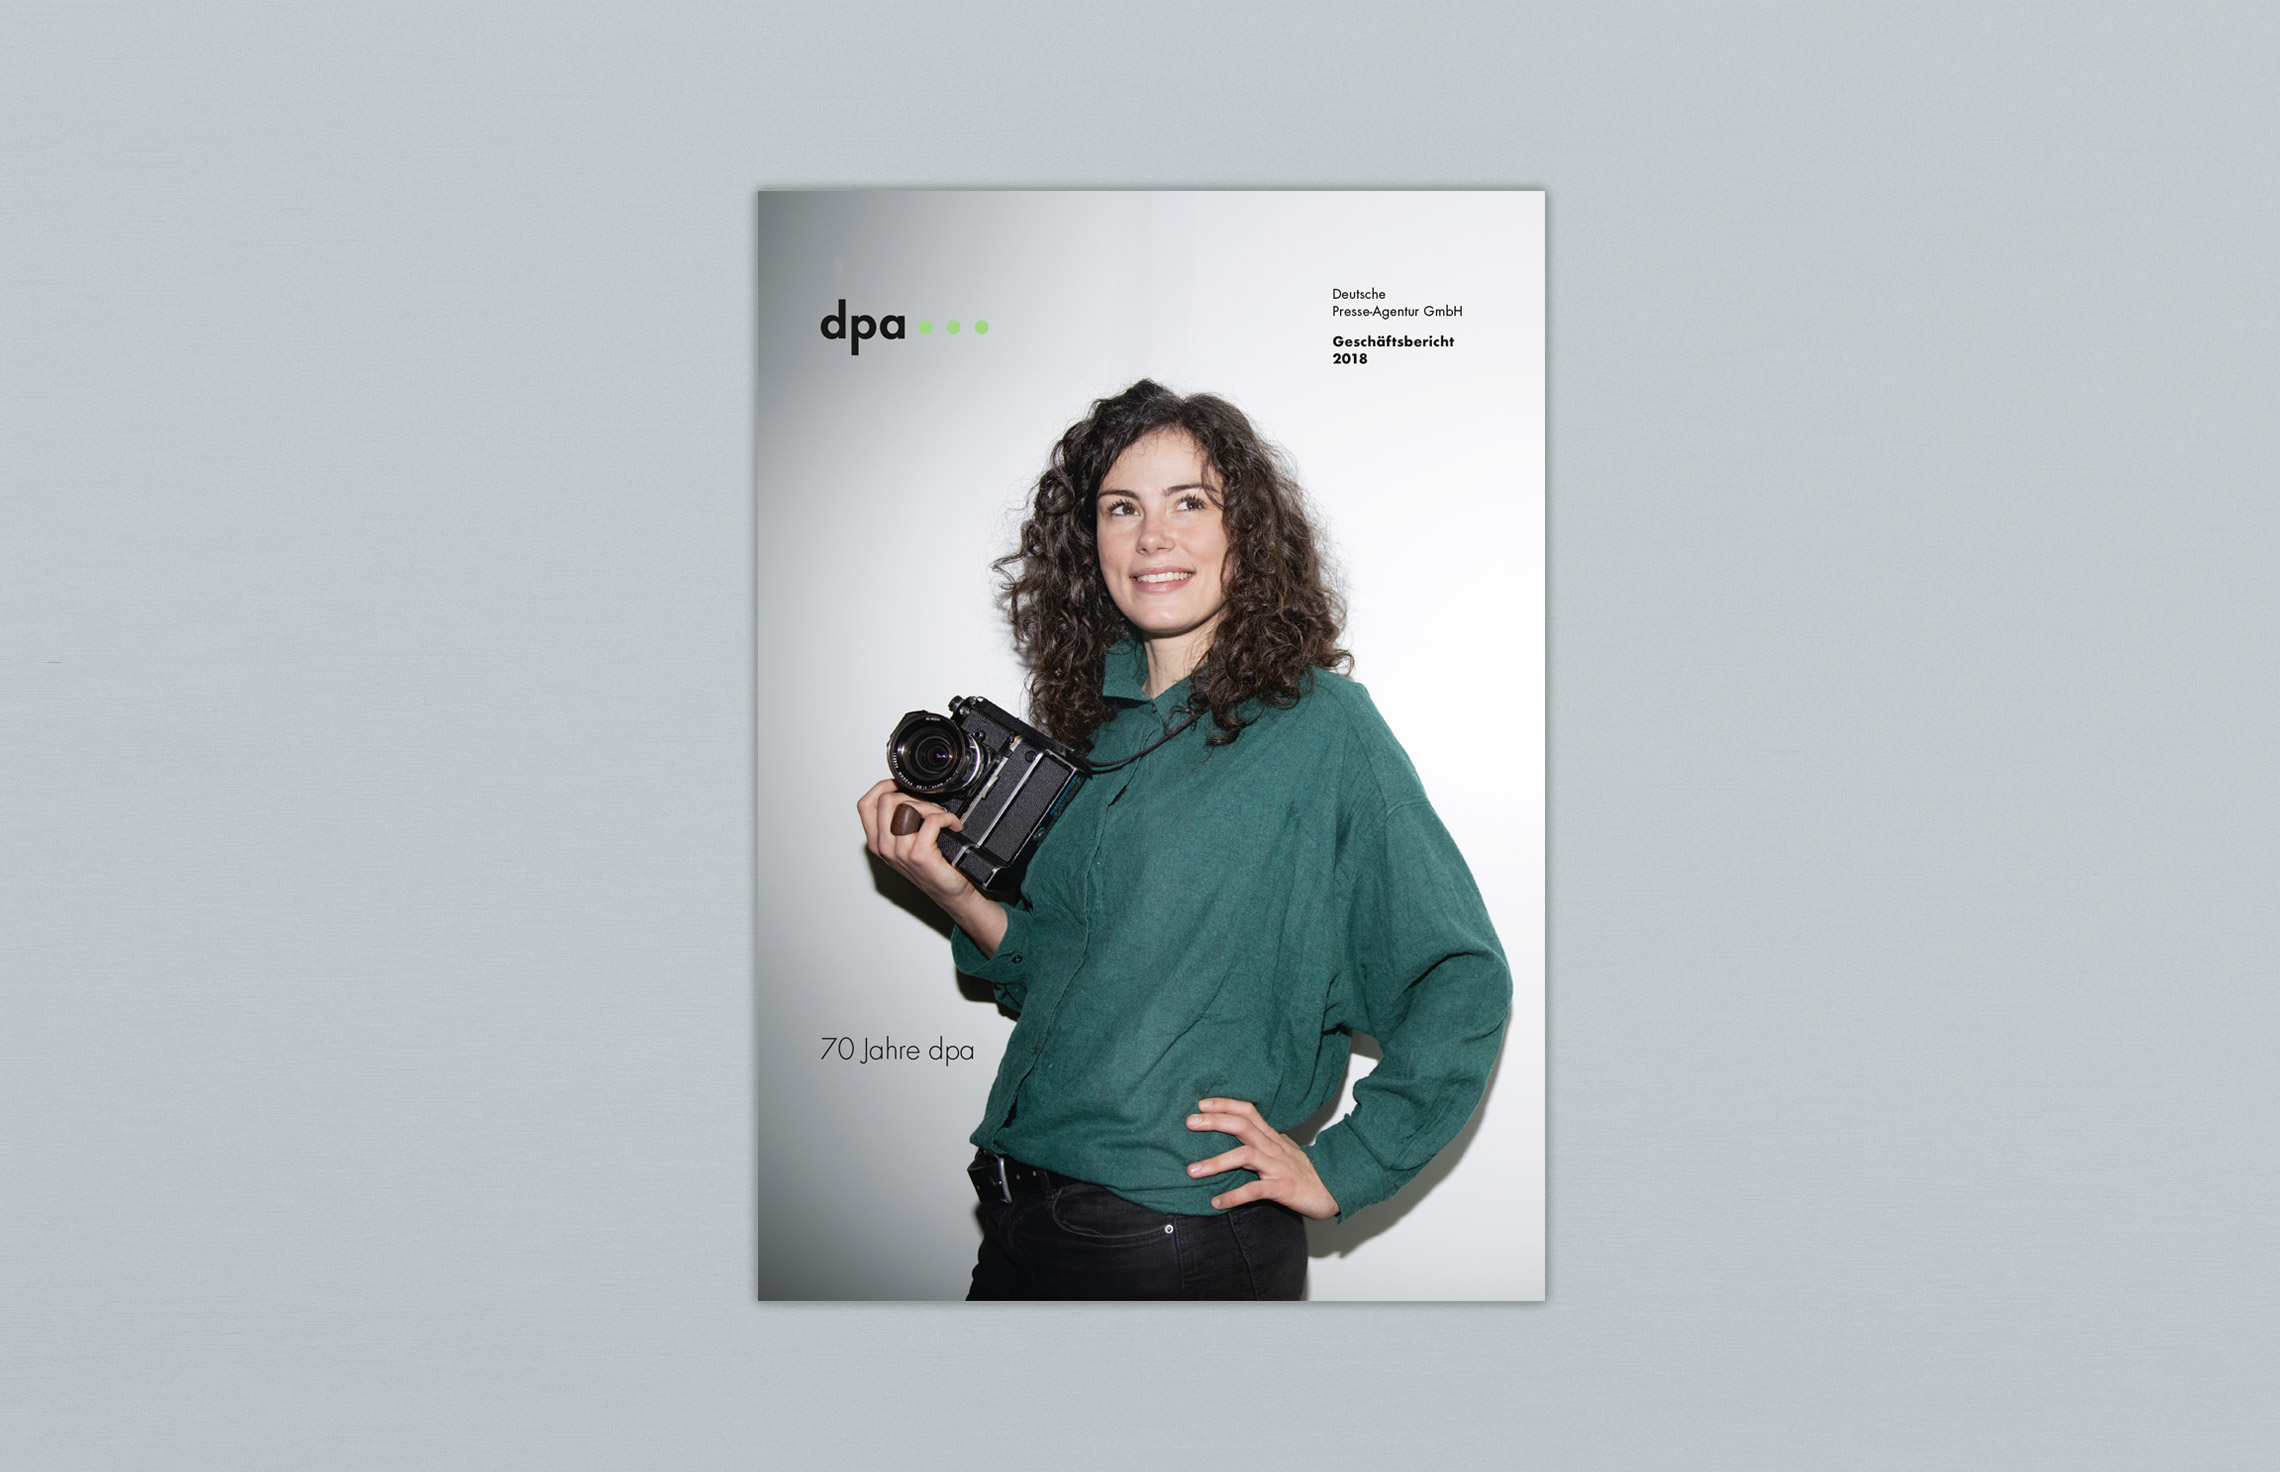 Annual Report Design, Geschäftsbericht 2018 der dpa Deutsche Presse-Agentur, Hamburg (Titel); Typografie, Fotografie